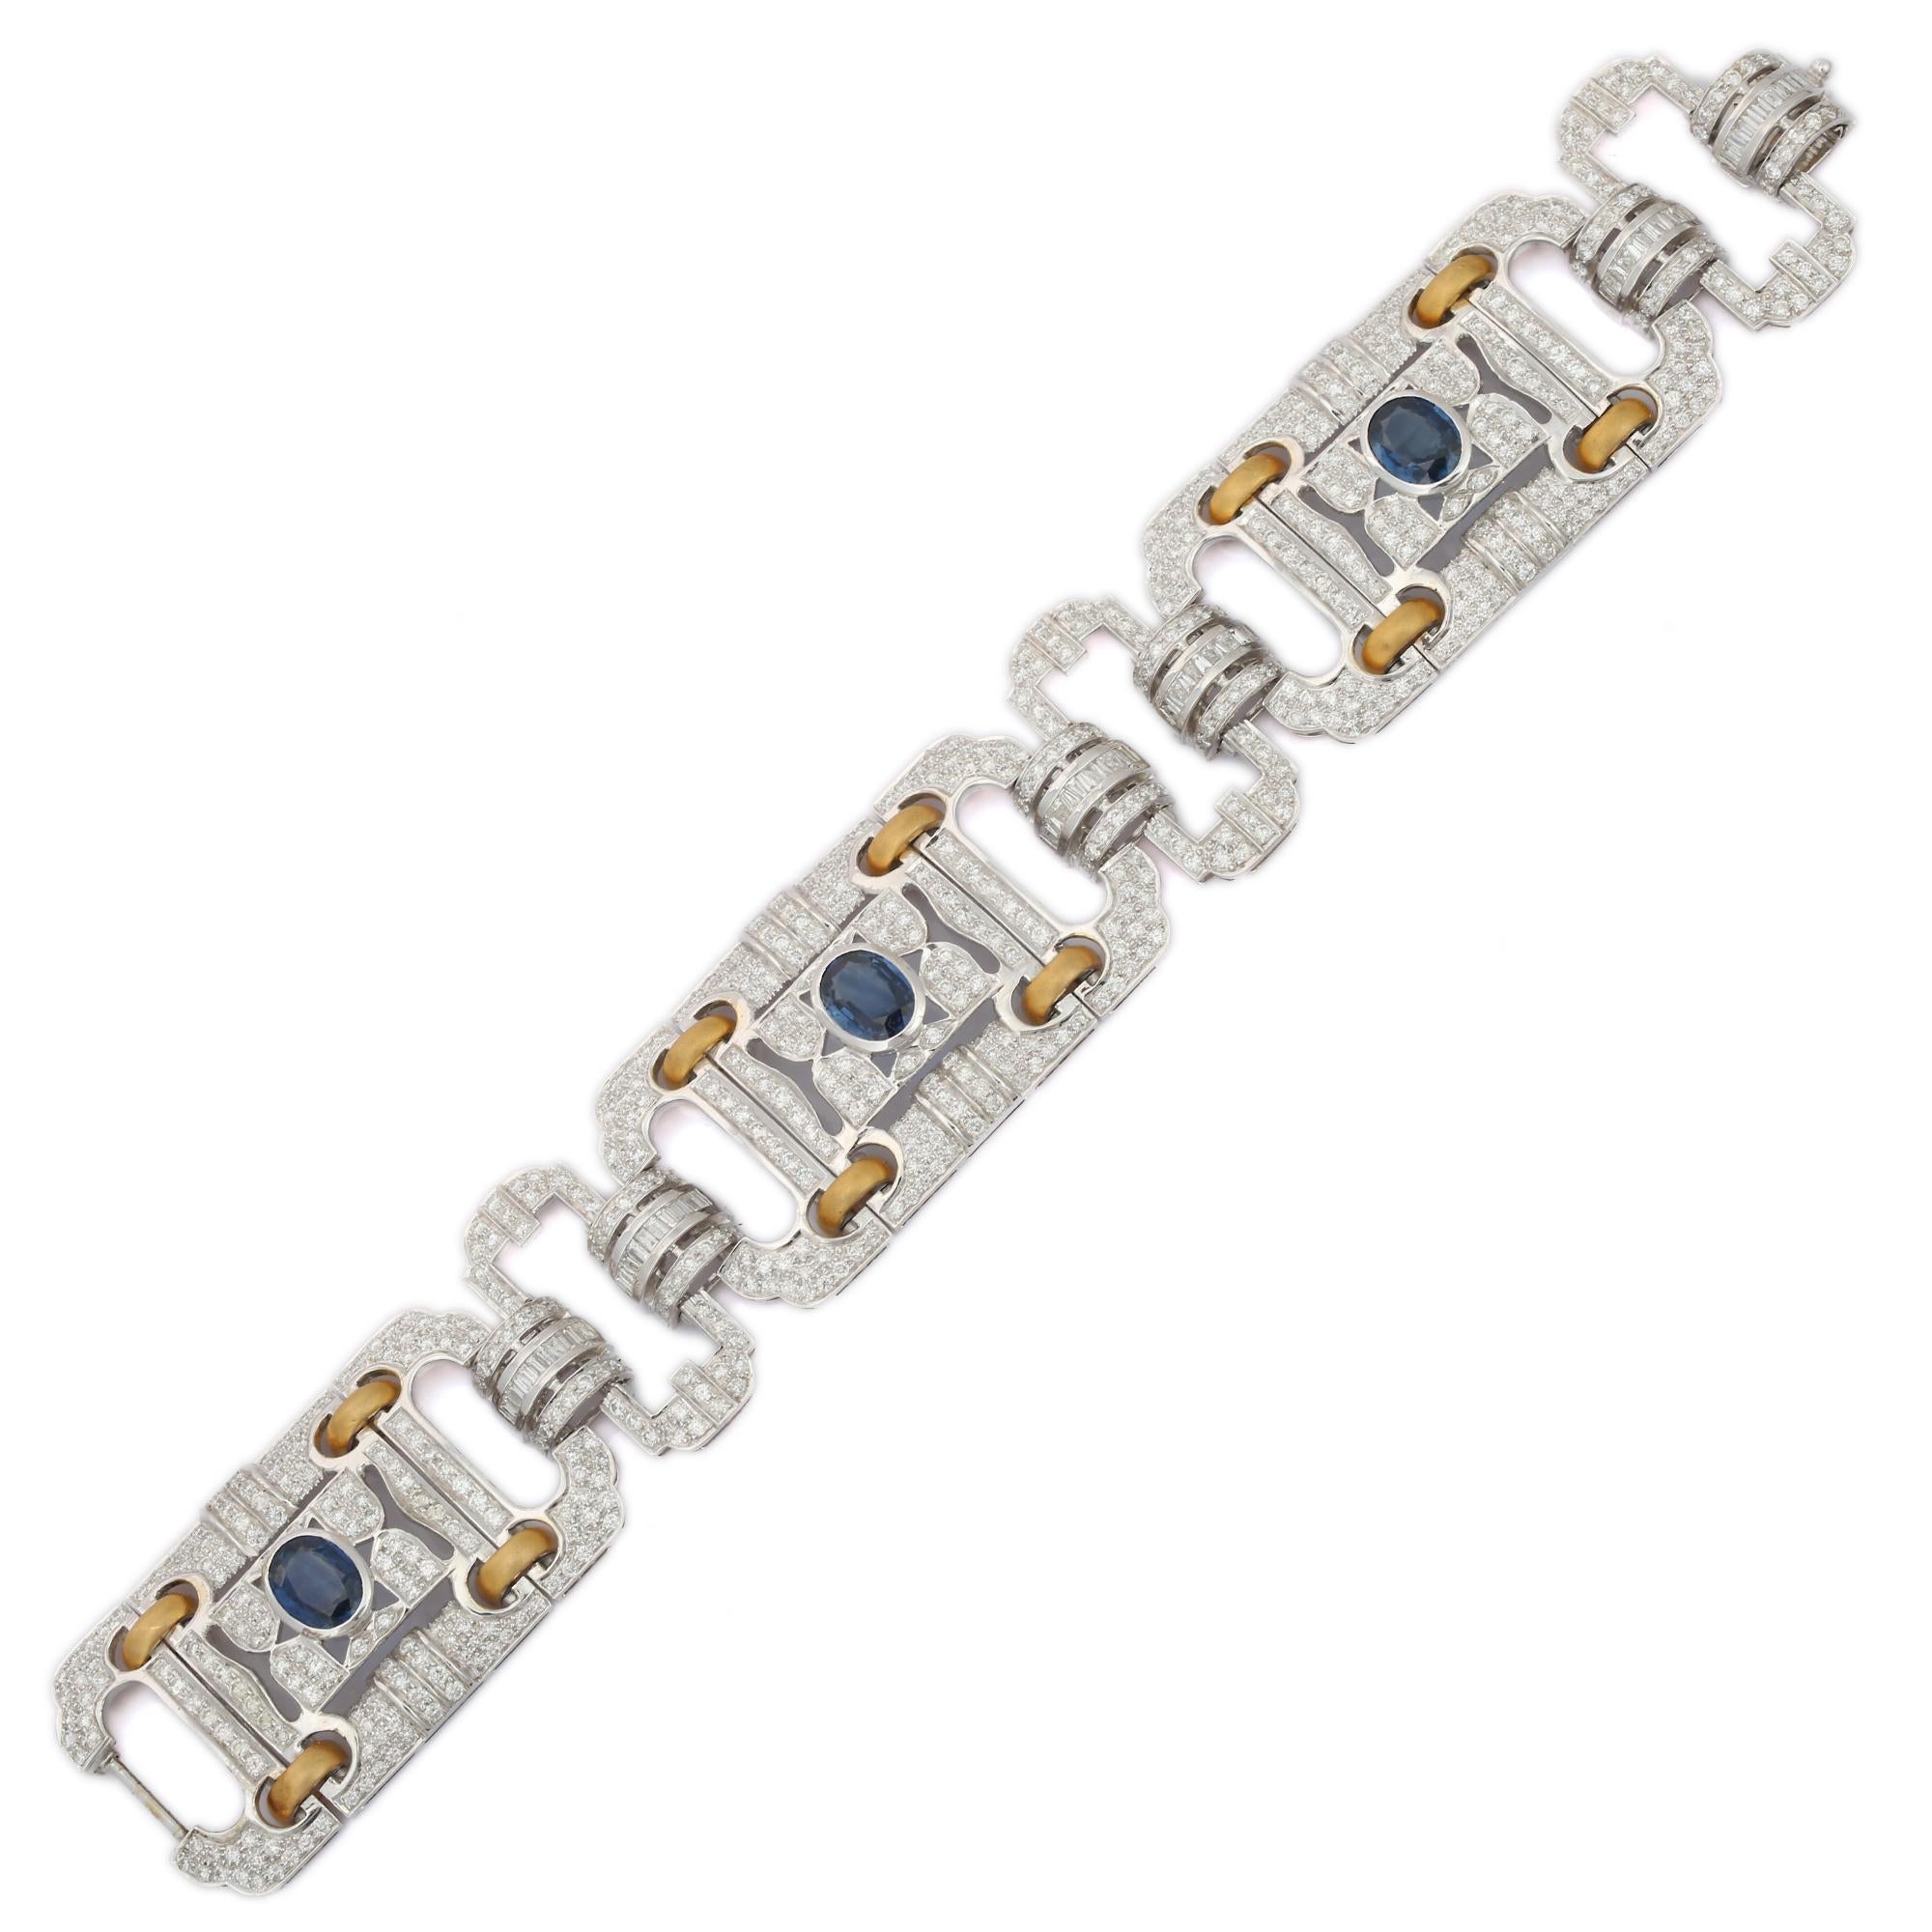 Dieses vom Art déco inspirierte Saphir-Diamant-Armband aus 18 Karat Gold präsentiert 3 unendlich funkelnde natürliche Saphire mit einem Gewicht von 6,4 Karat und Diamanten von 10,5 Karat. Es misst 7.025 Zoll in der Länge. 
Der Saphir fördert die